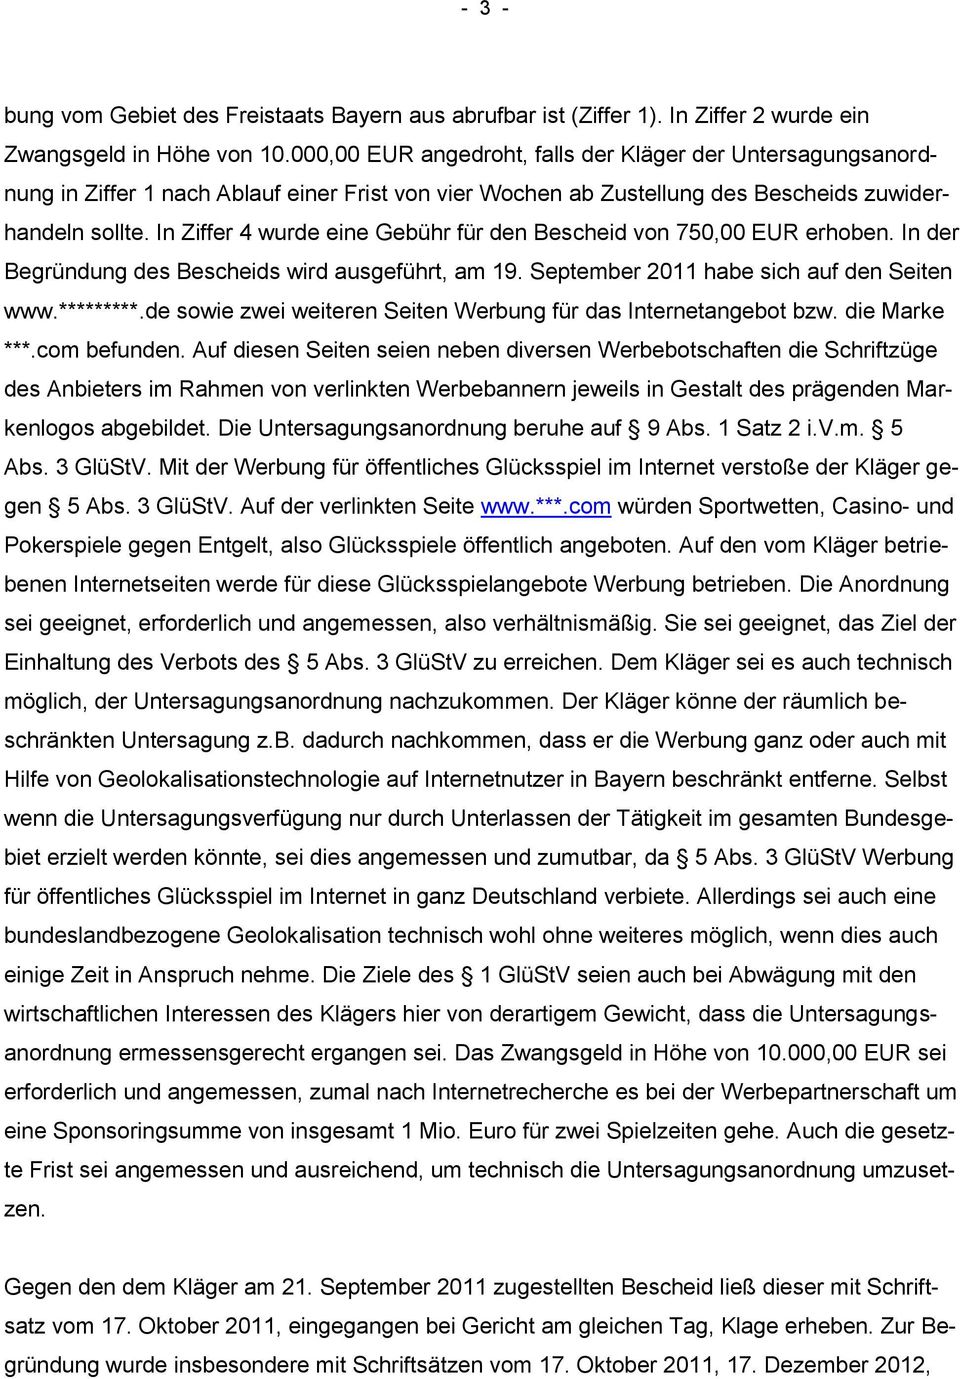 In Ziffer 4 wurde eine Gebühr für den Bescheid von 750,00 EUR erhoben. In der Begründung des Bescheids wird ausgeführt, am 19. September 2011 habe sich auf den Seiten www.*********.